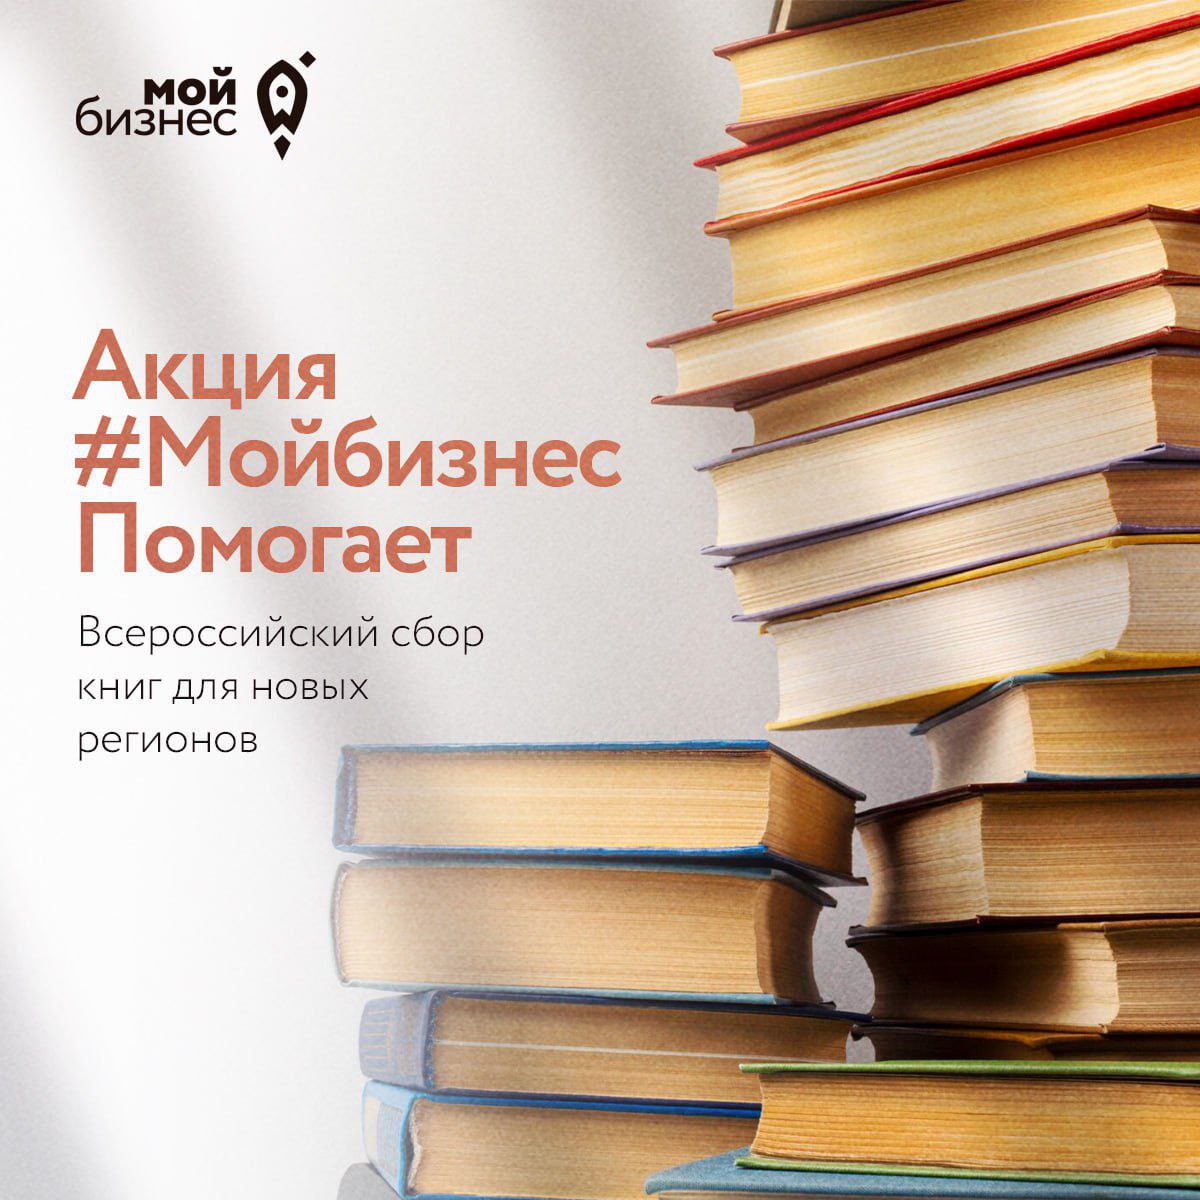 Объявлен сбор деловой литературы для новых регионов РФ